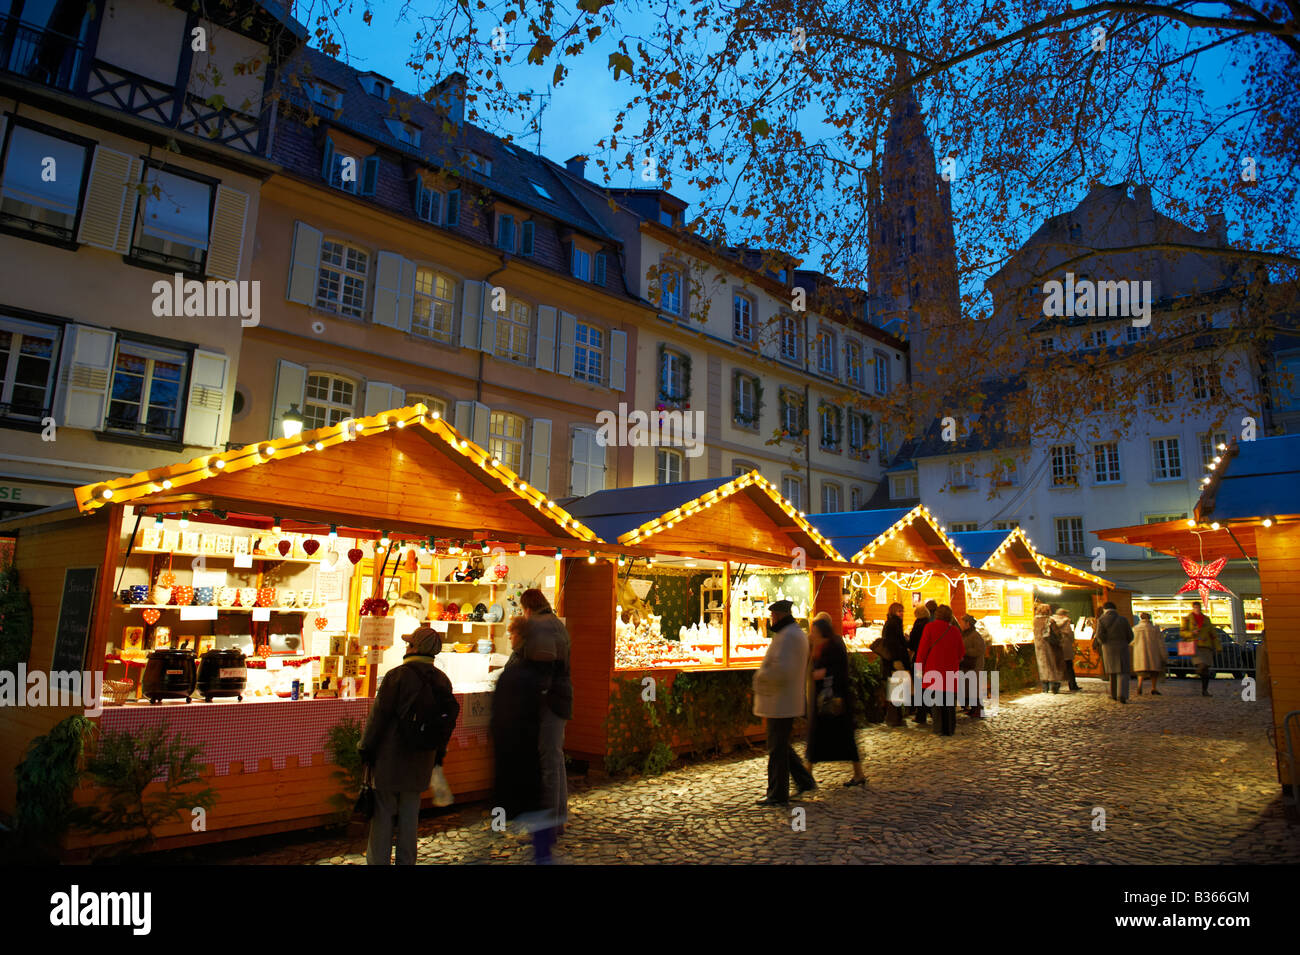 Weihnachtsmarkt in der Dämmerung - Strasbourg-Frankreich Stockfoto